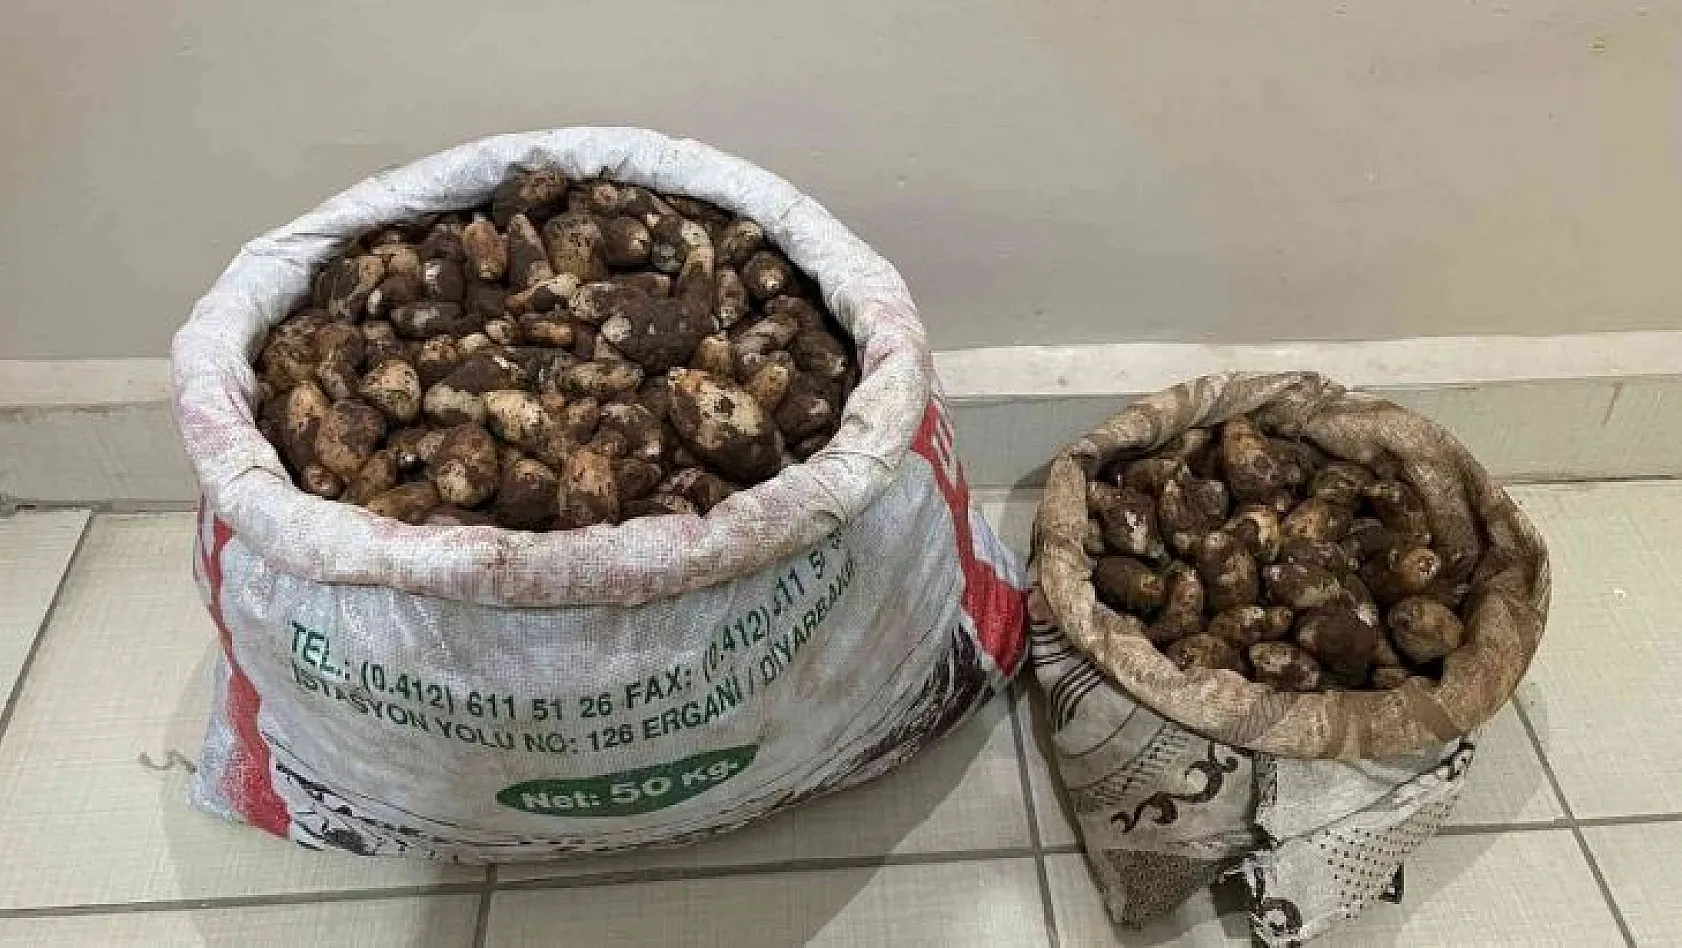 Elazığ'da Salep Soğanı Toplayan 4 Kişiye 436 Bin Lira Para Cezası